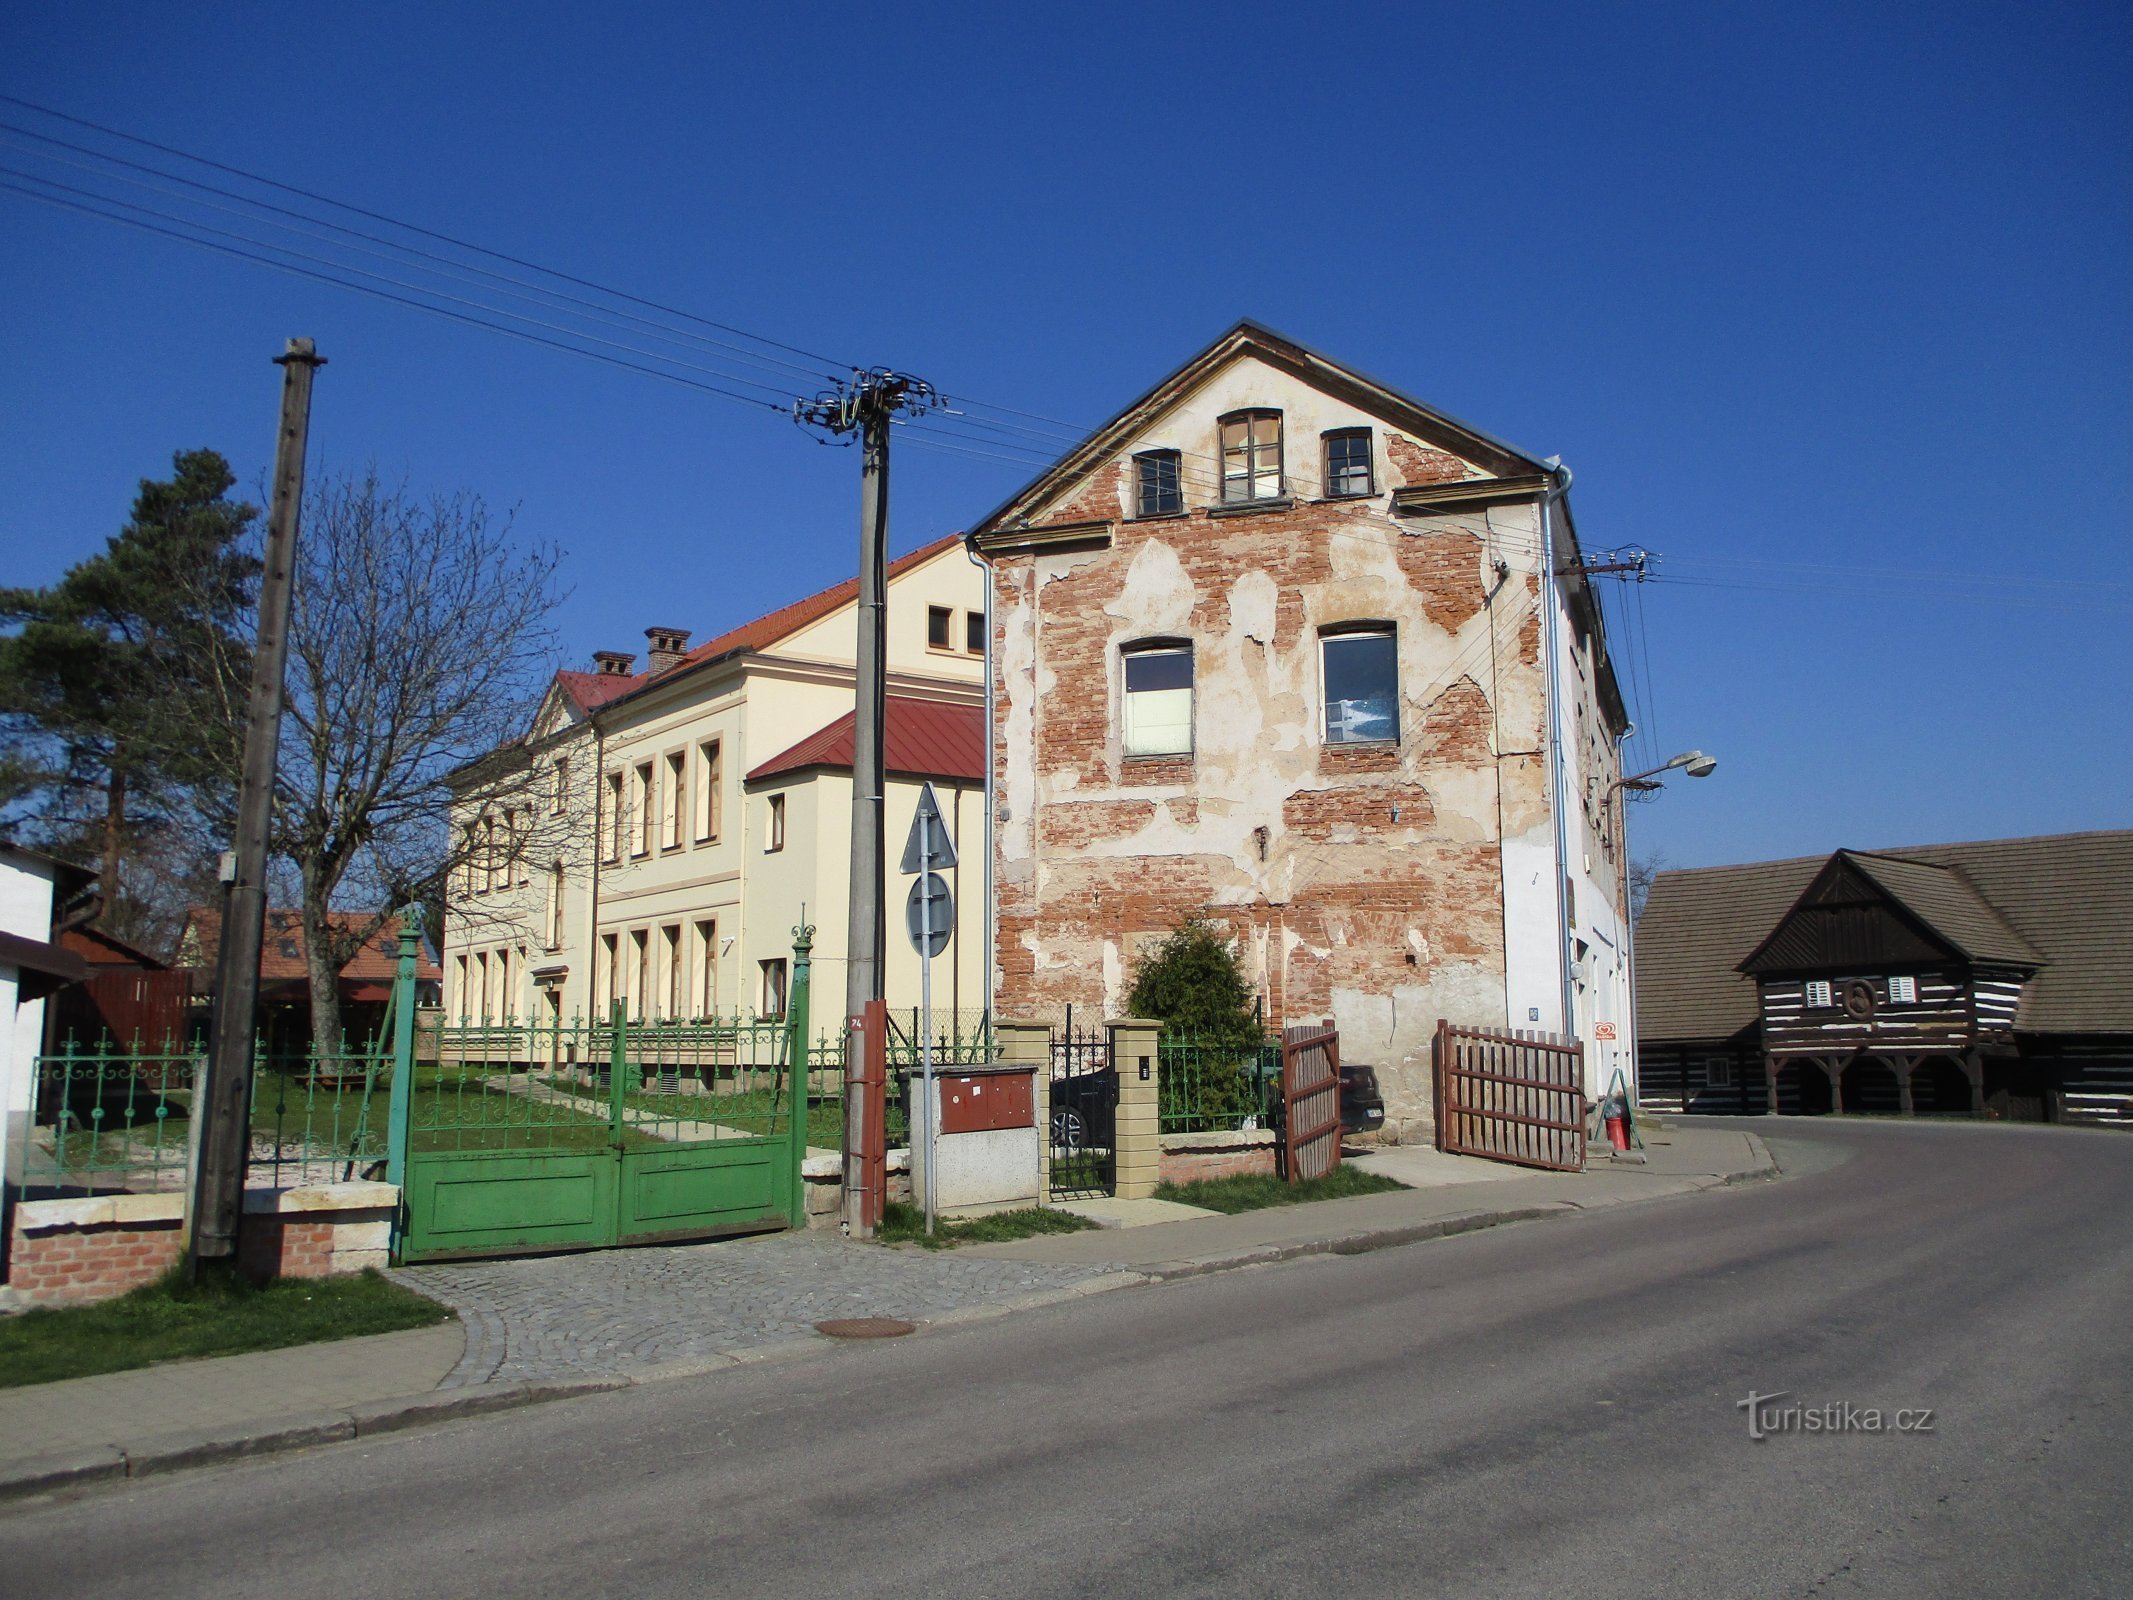 Școala nr. 4 și Casa nr. 5 (Hoříneves, 2.4.2020 aprilie XNUMX)